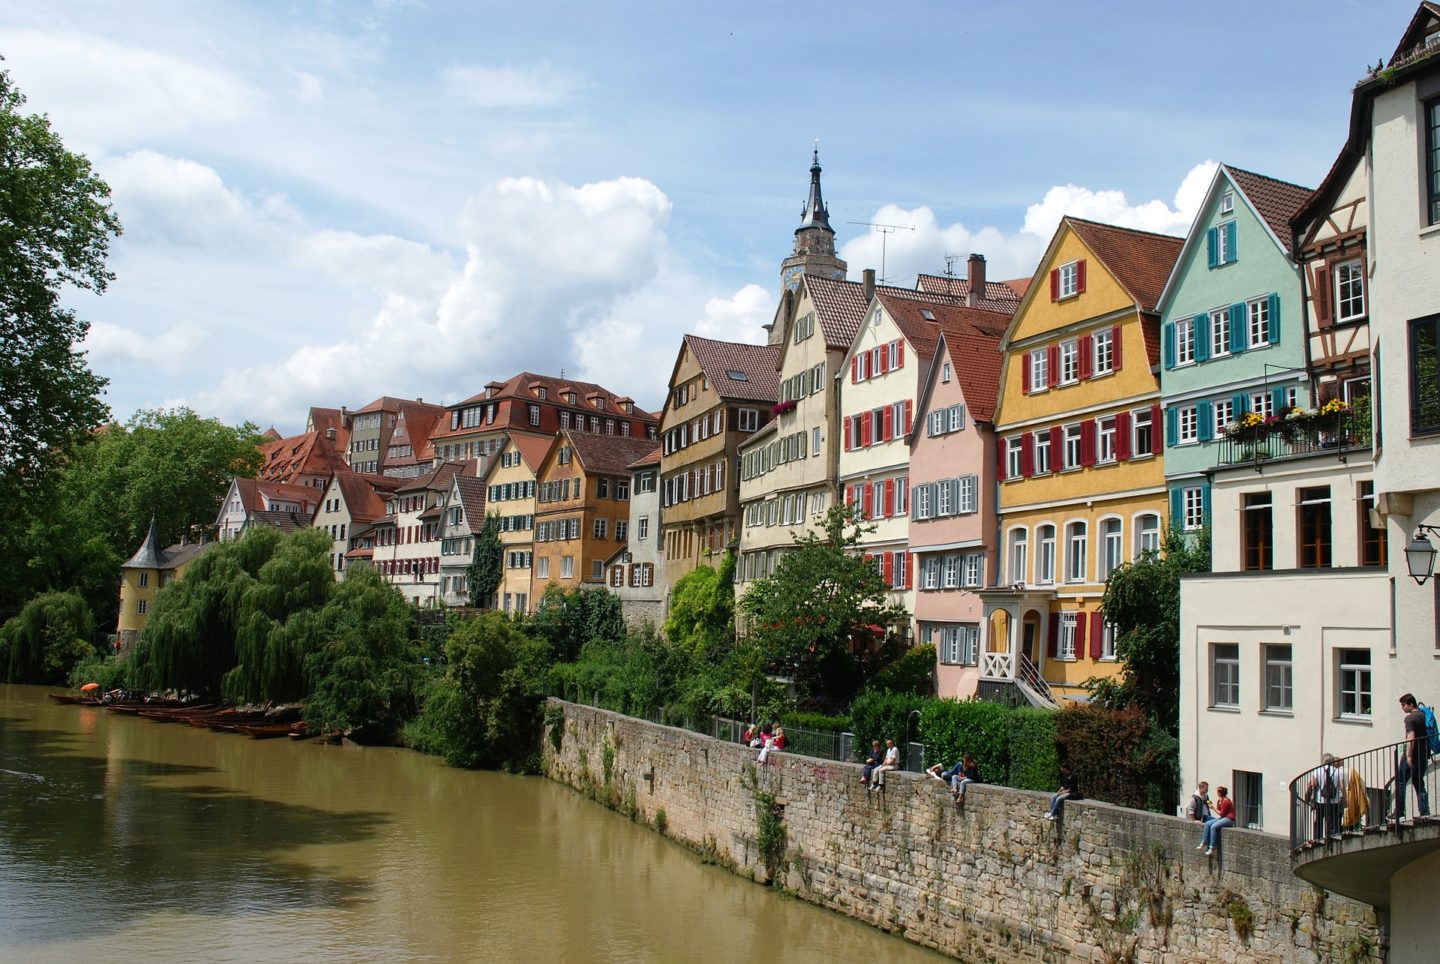 The beautiful Tübingen